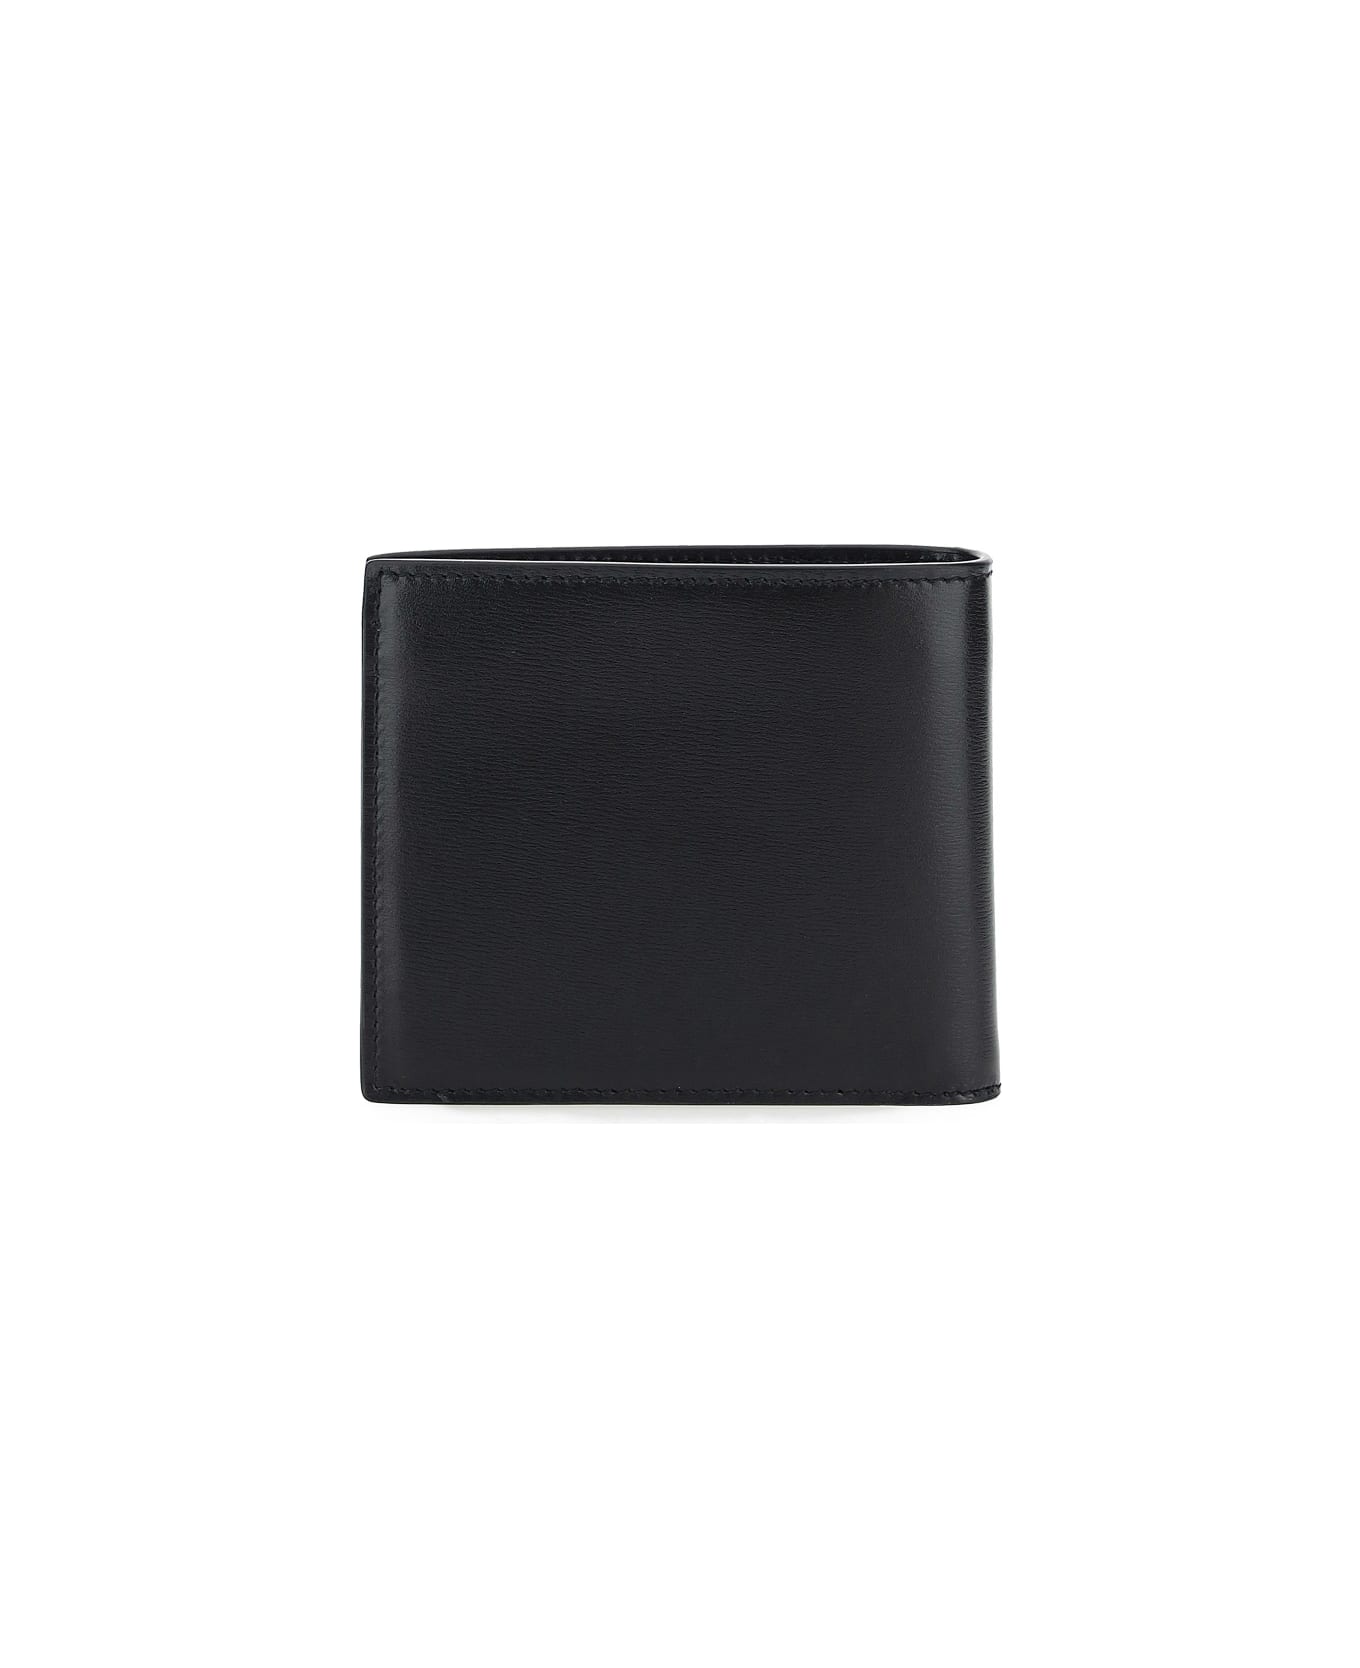 Saint Laurent Compact Leather Wallet - Nero